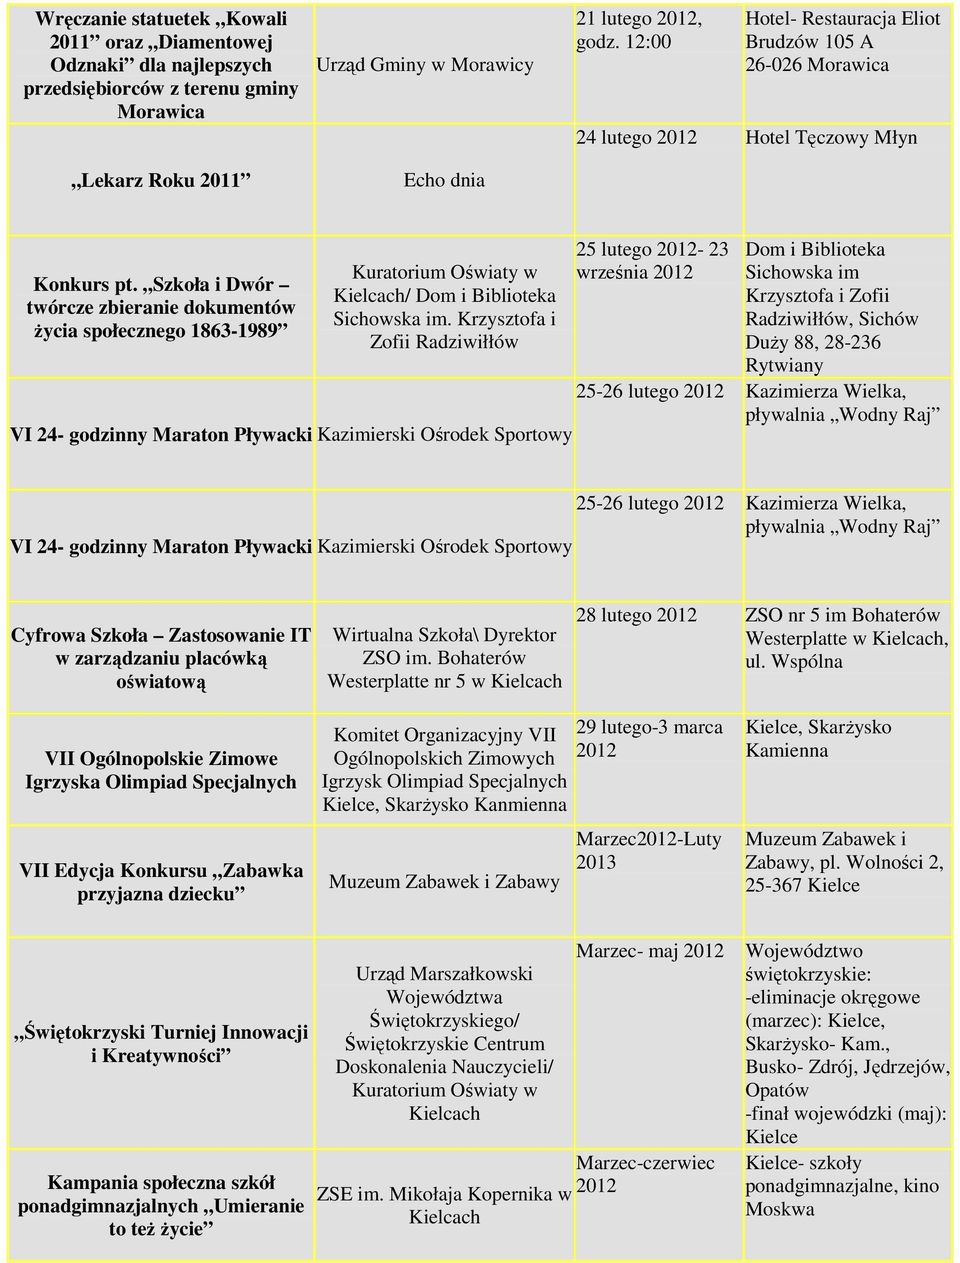 Szkoła i Dwór twórcze zbieranie dokumentów Ŝycia społecznego 1863-1989 Kuratorium Oświaty w / Dom i Biblioteka Sichowska im.